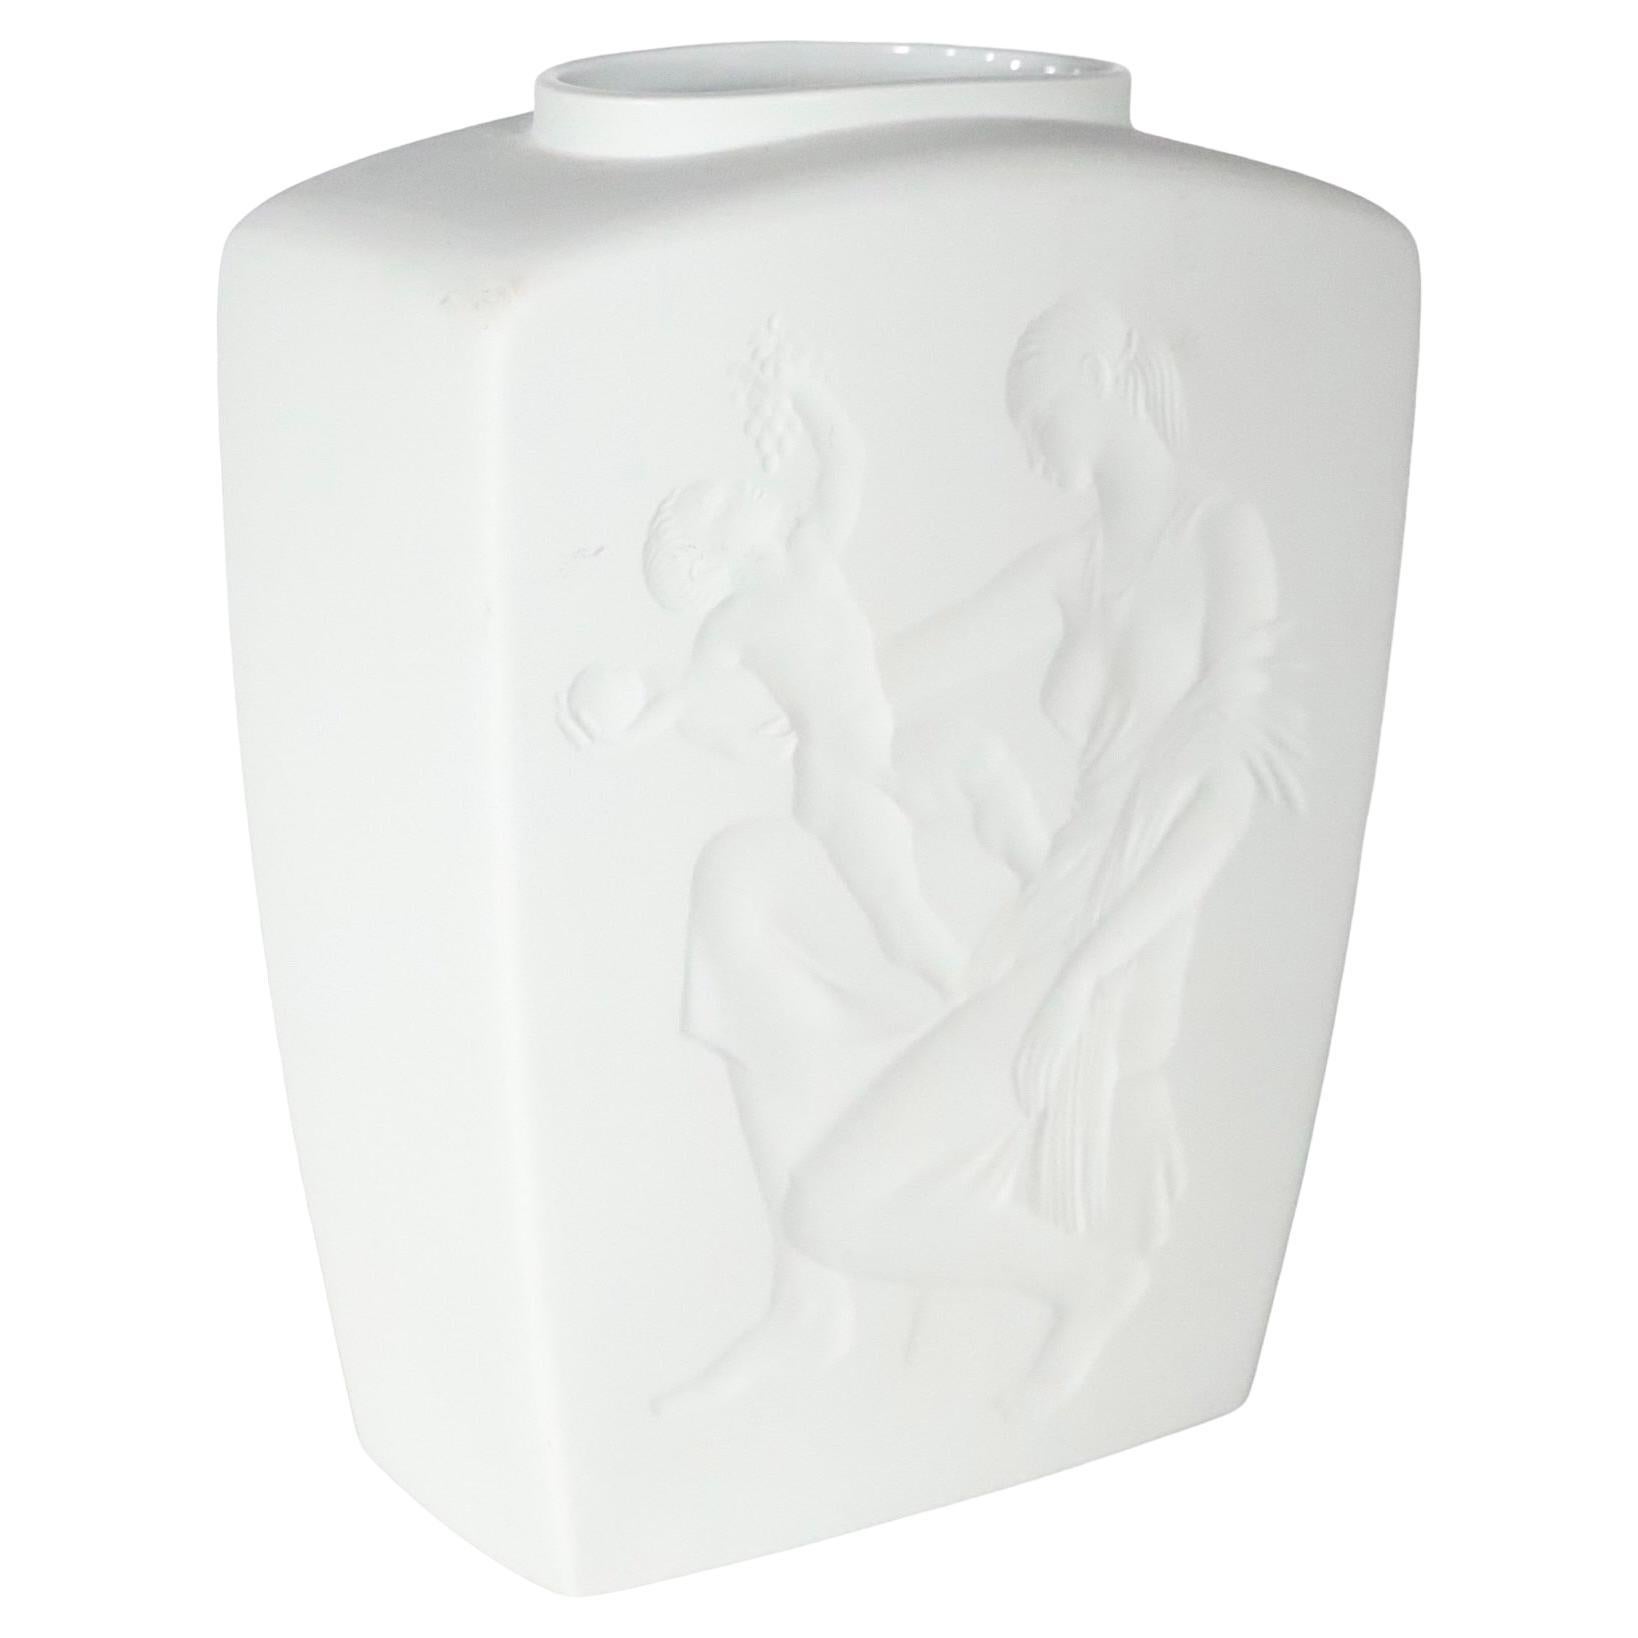 Vase exquis en biscuit Art déco dans une  des couleurs sophistiquées en blanc sur blanc. Le vase représente une scène classique de mère et d'enfant, exécutée en relief.
 La pièce est en excellent état, d'origine, propre et prête à être exposée, sans